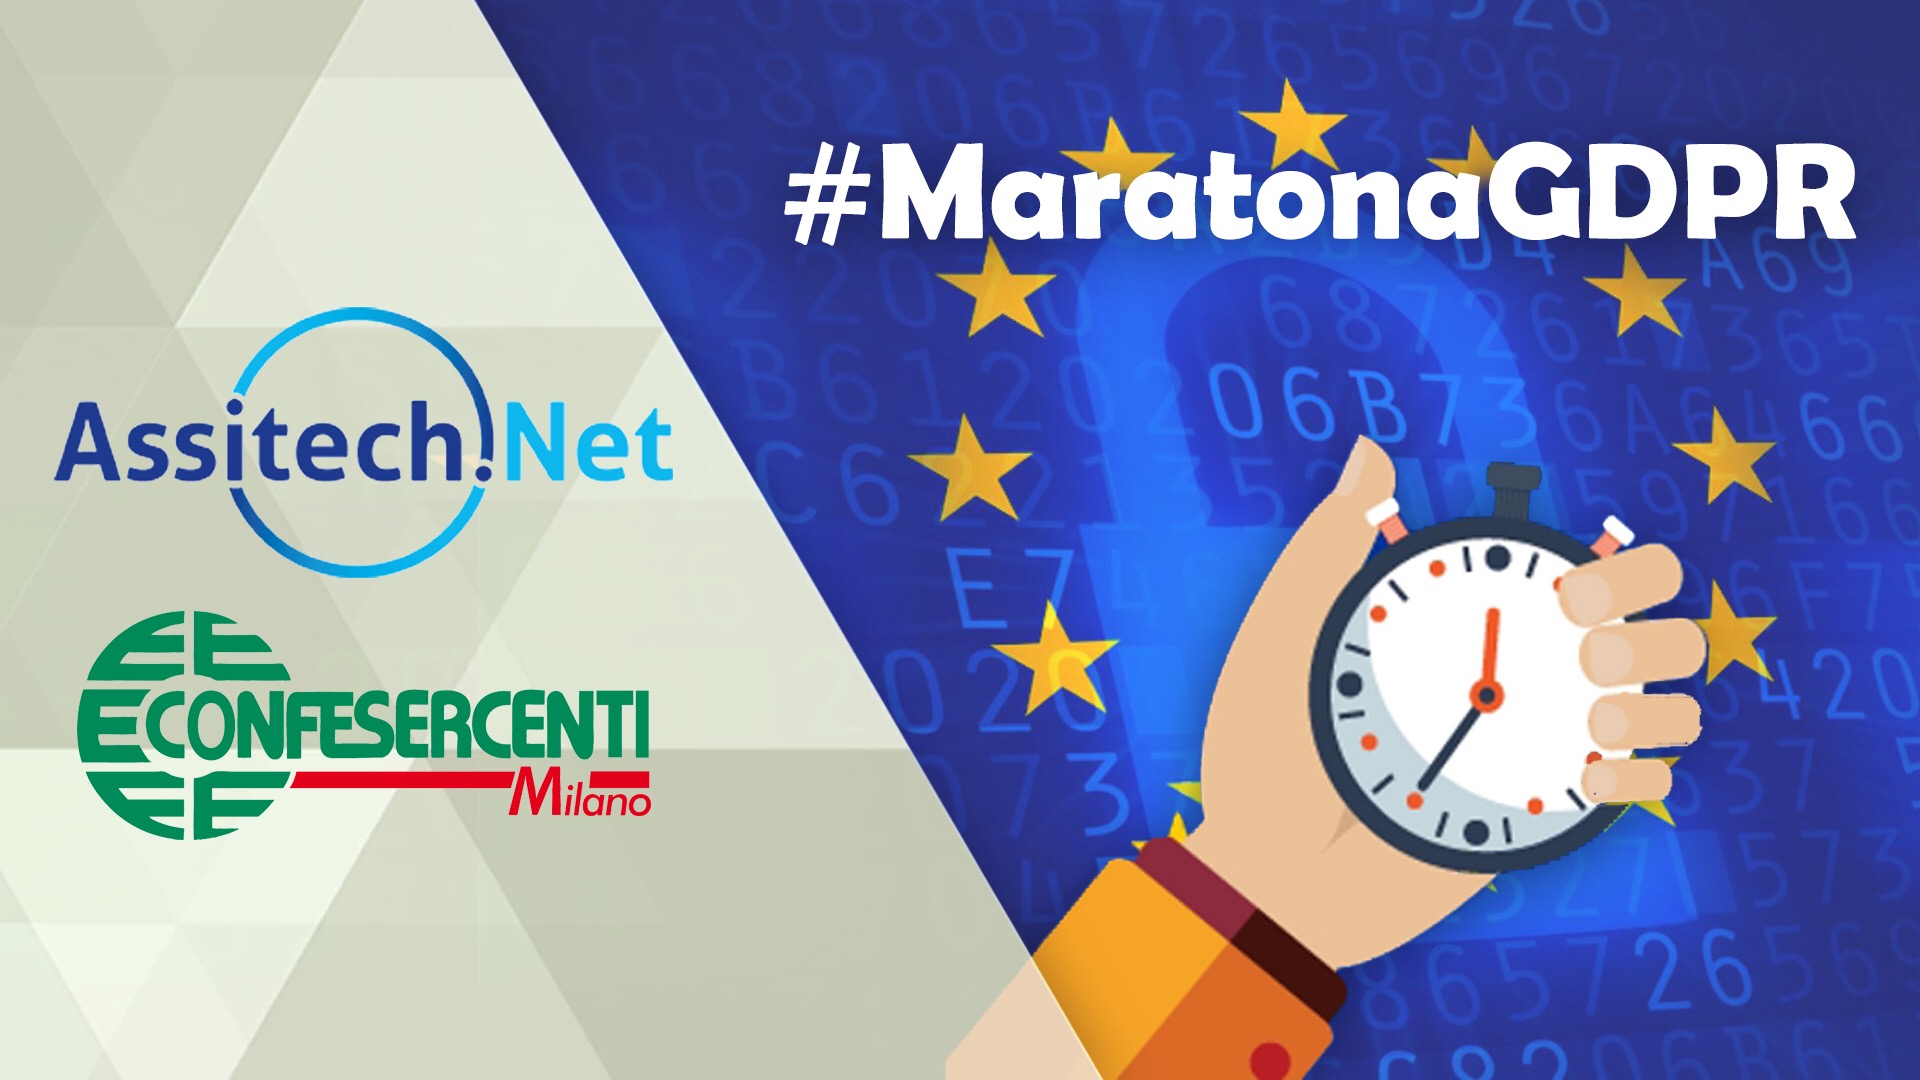 24 maggio: Assitech.Net e Confesercenti Milano in diretta streaming "Maratona GDPR"